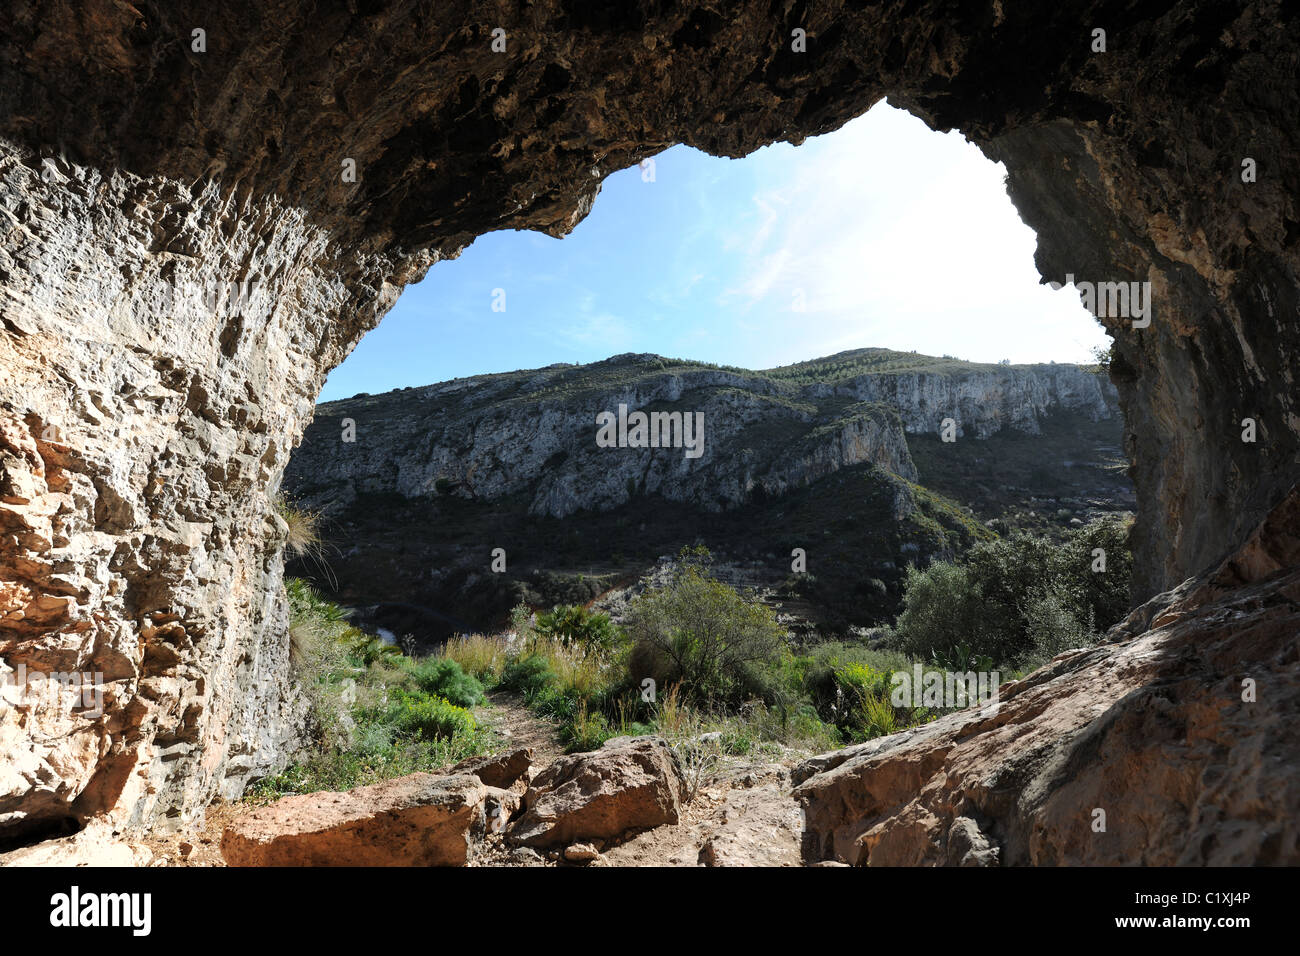 En el sitio de cueva neolítica de arte rupestre, Pla de petracos, Castell de Castells, Marina Alta, Alicante Prov. Valencia, España Foto de stock